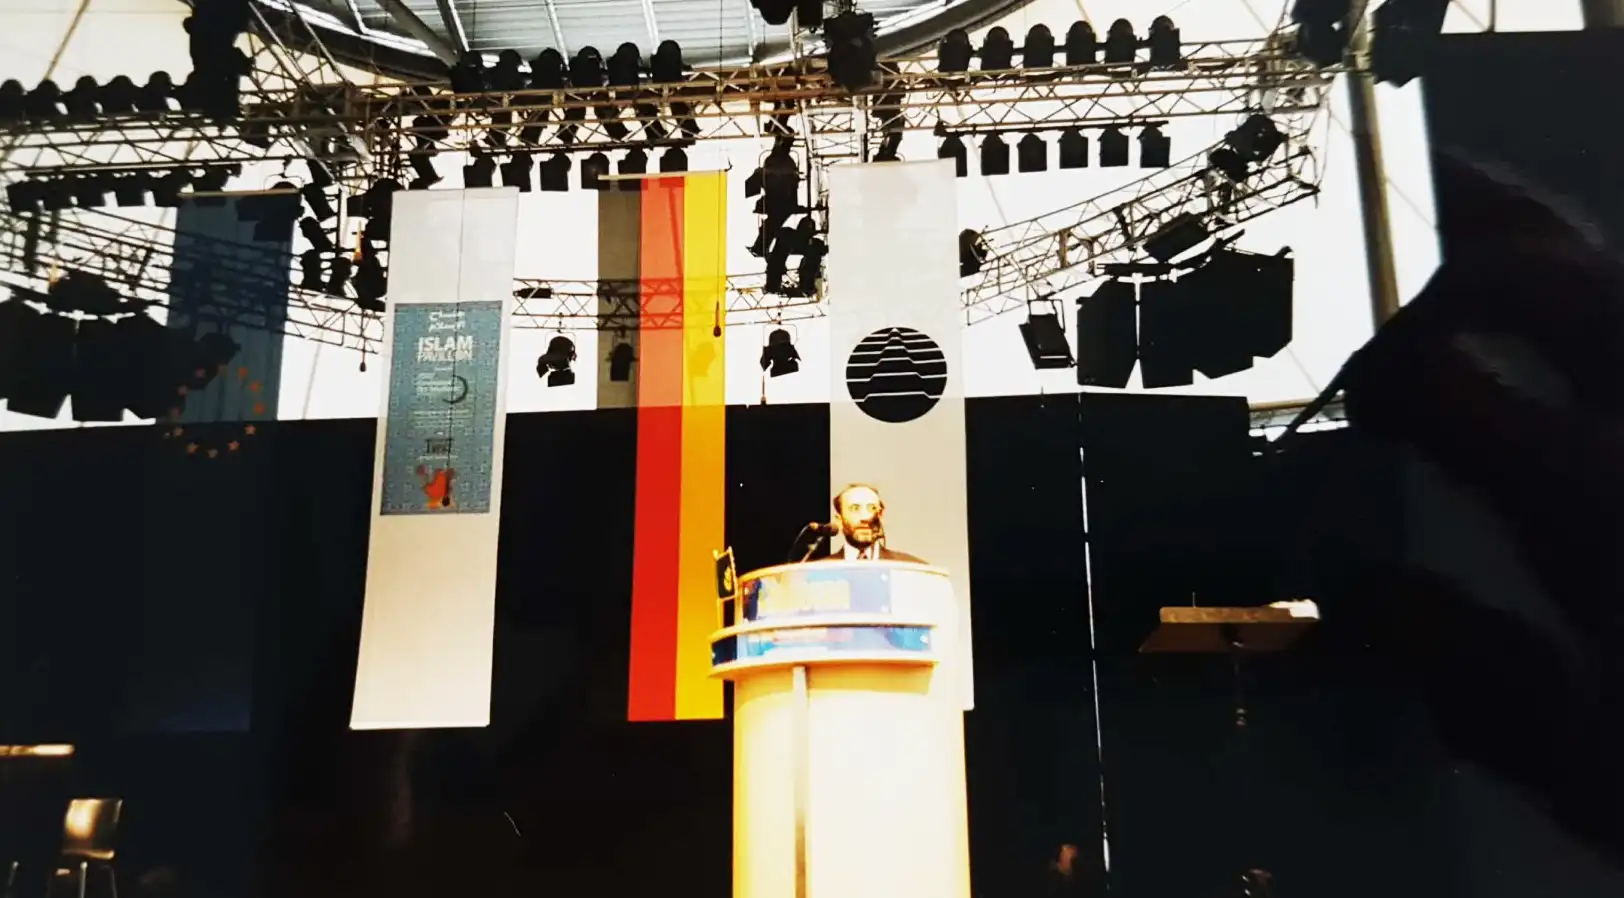 Abbildung-von-nadeem-elyas-auf-der-Bühne-bei-seiner-rede-vor-Besuchern-des-islampavillon-bei-der-expo-in-hannover-im-jahr-2000-IISW